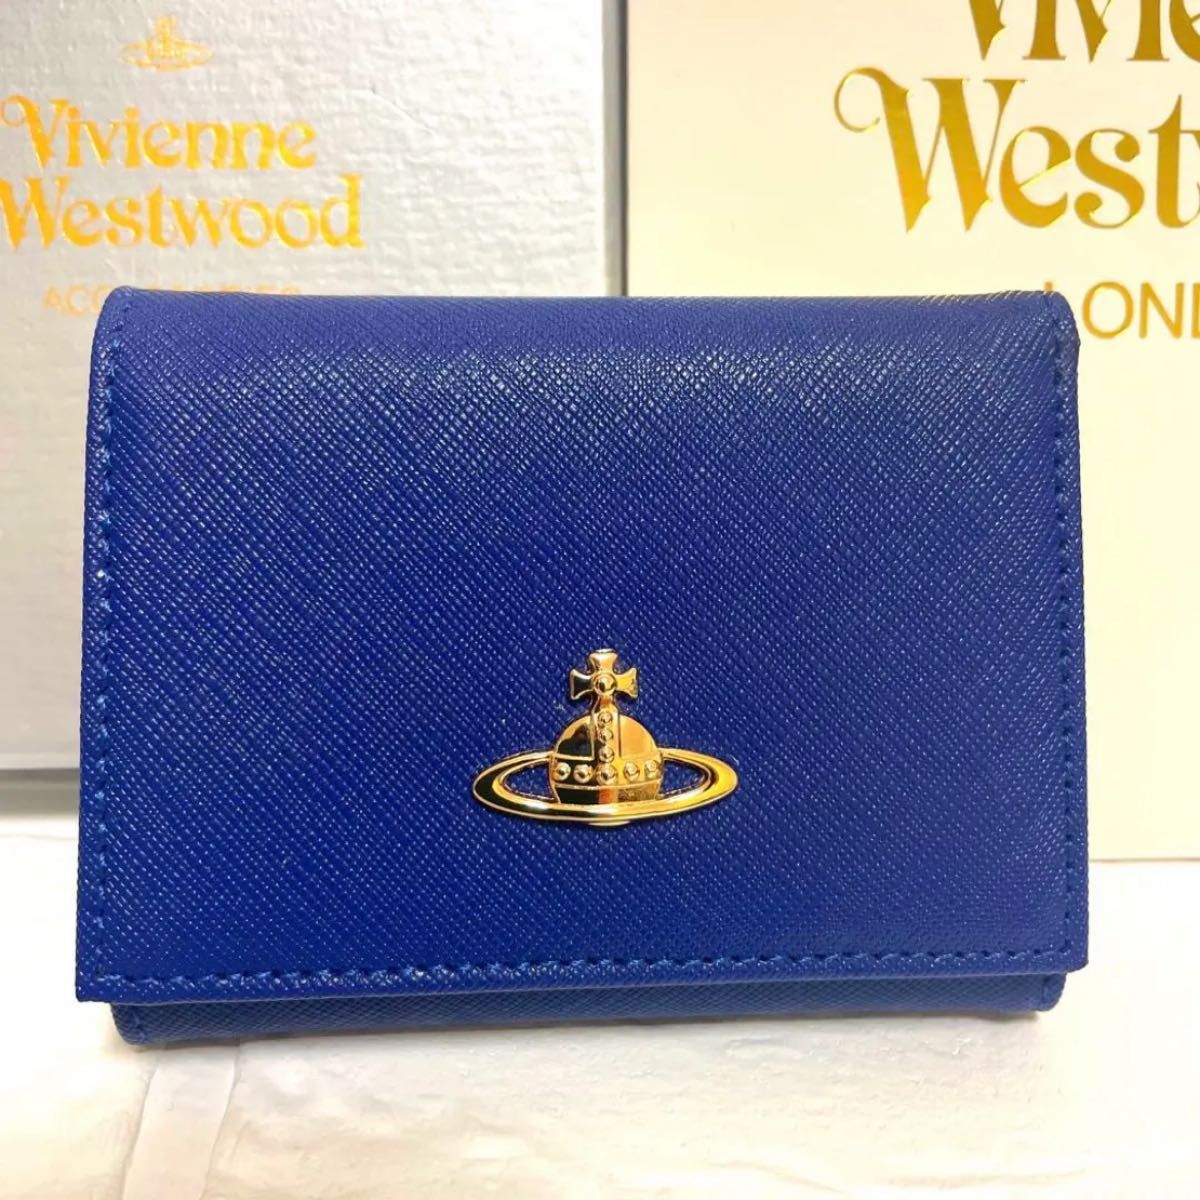 ヴィヴィアンウエストウッド 三つ折財布 がま口 ブルー 青 新品未使用